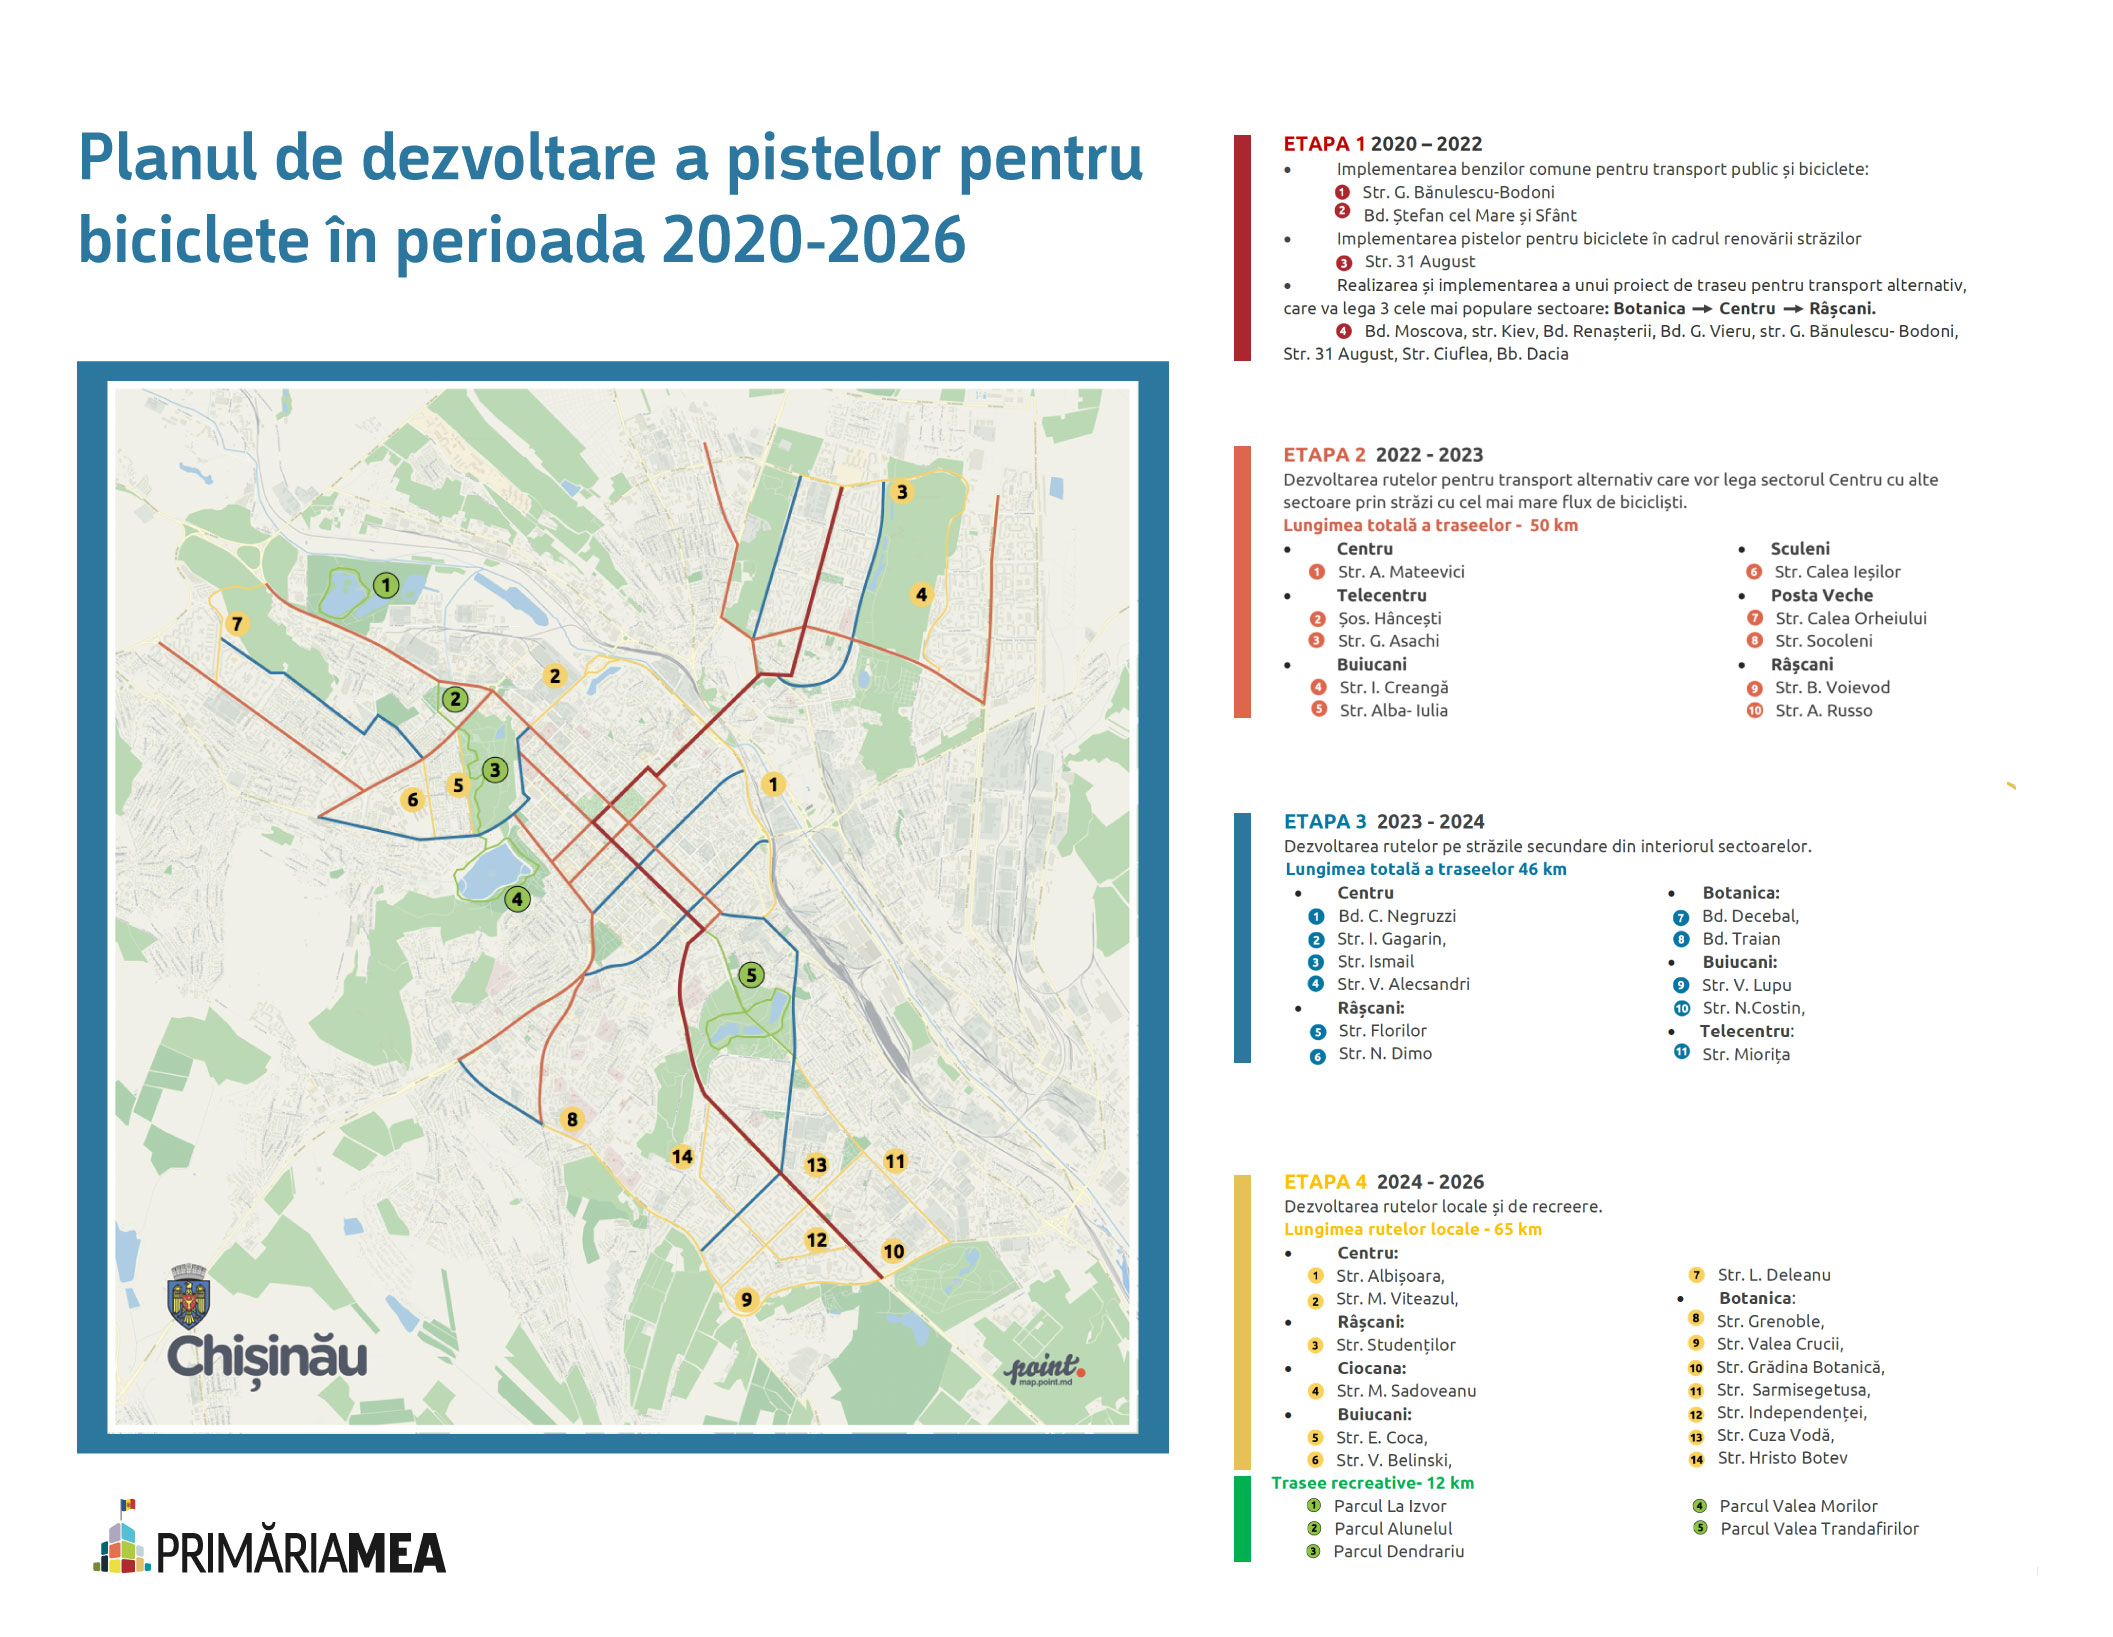 Infografic: Planul de dezvoltare a rețelei pentru transport alternativ pentru 2020-2026. Sursă: Strategia de dezvoltare. Adaptare: Primăria Mea.